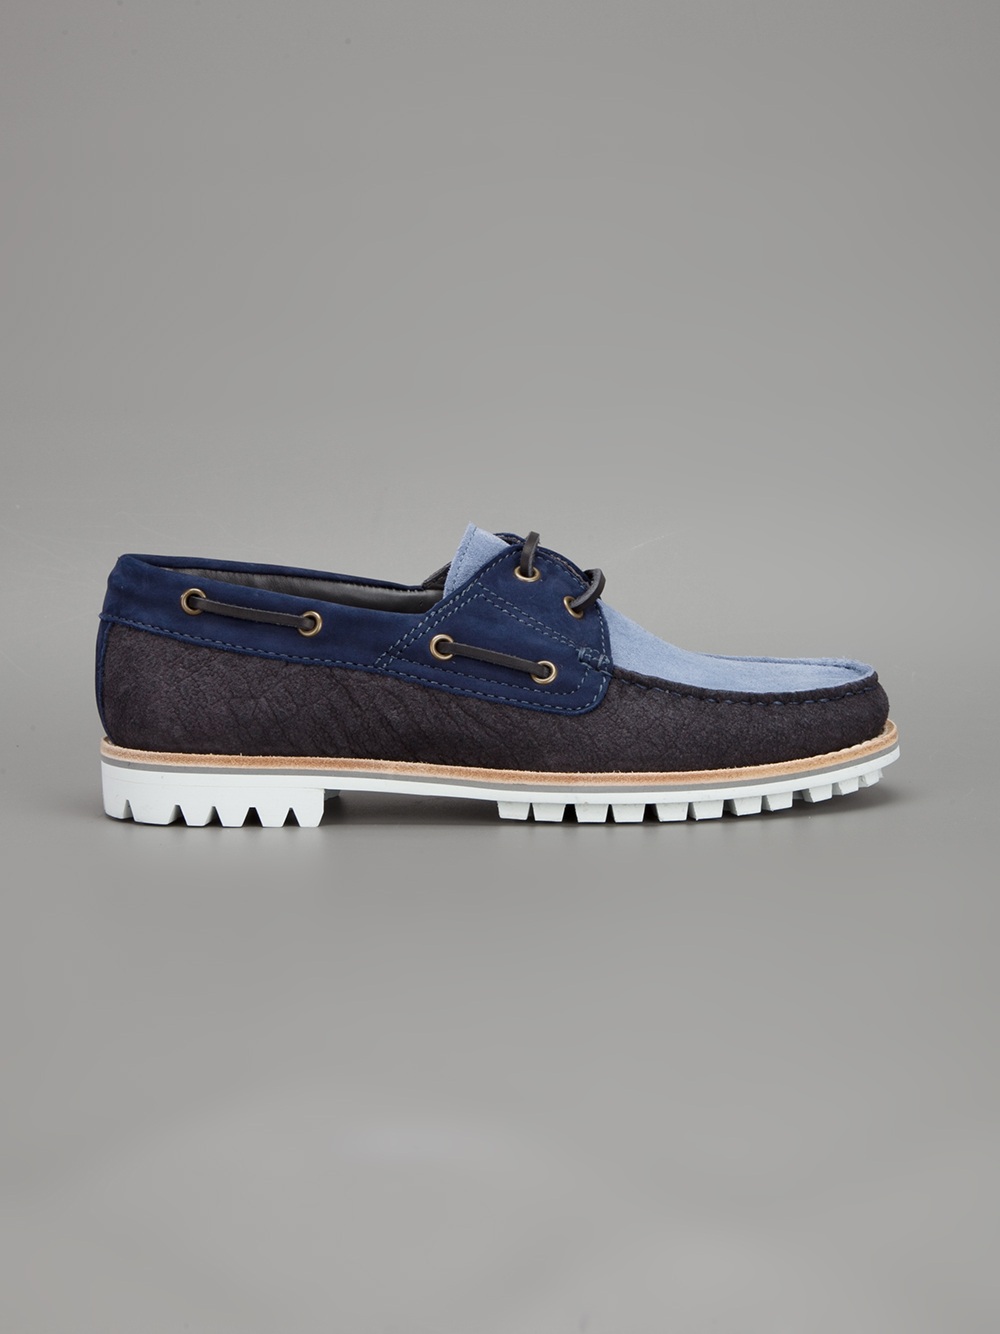 Lanvin Bicolour Deck Shoe in Navy (Blue) for Men - Lyst